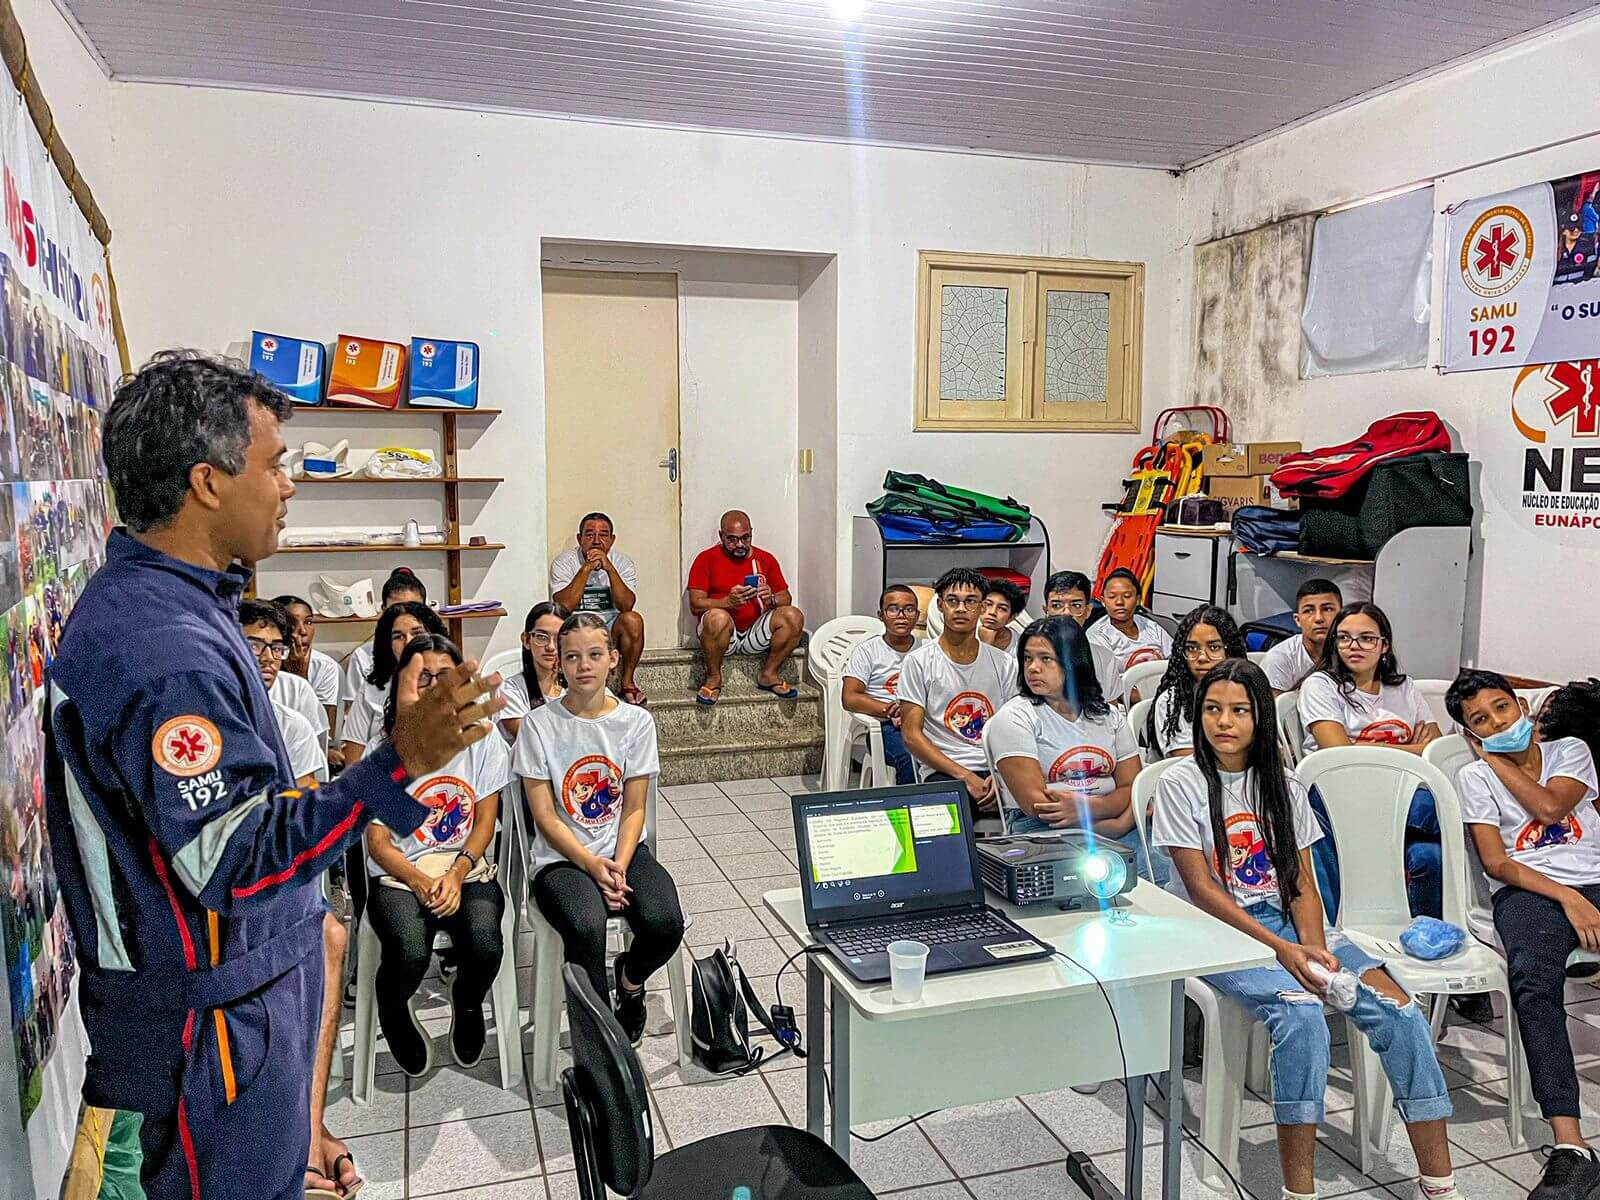 Prefeitura de Eunápolis inicia projeto-piloto “Samuzinho” para estudantes com aulas sobre o SAMU192 39